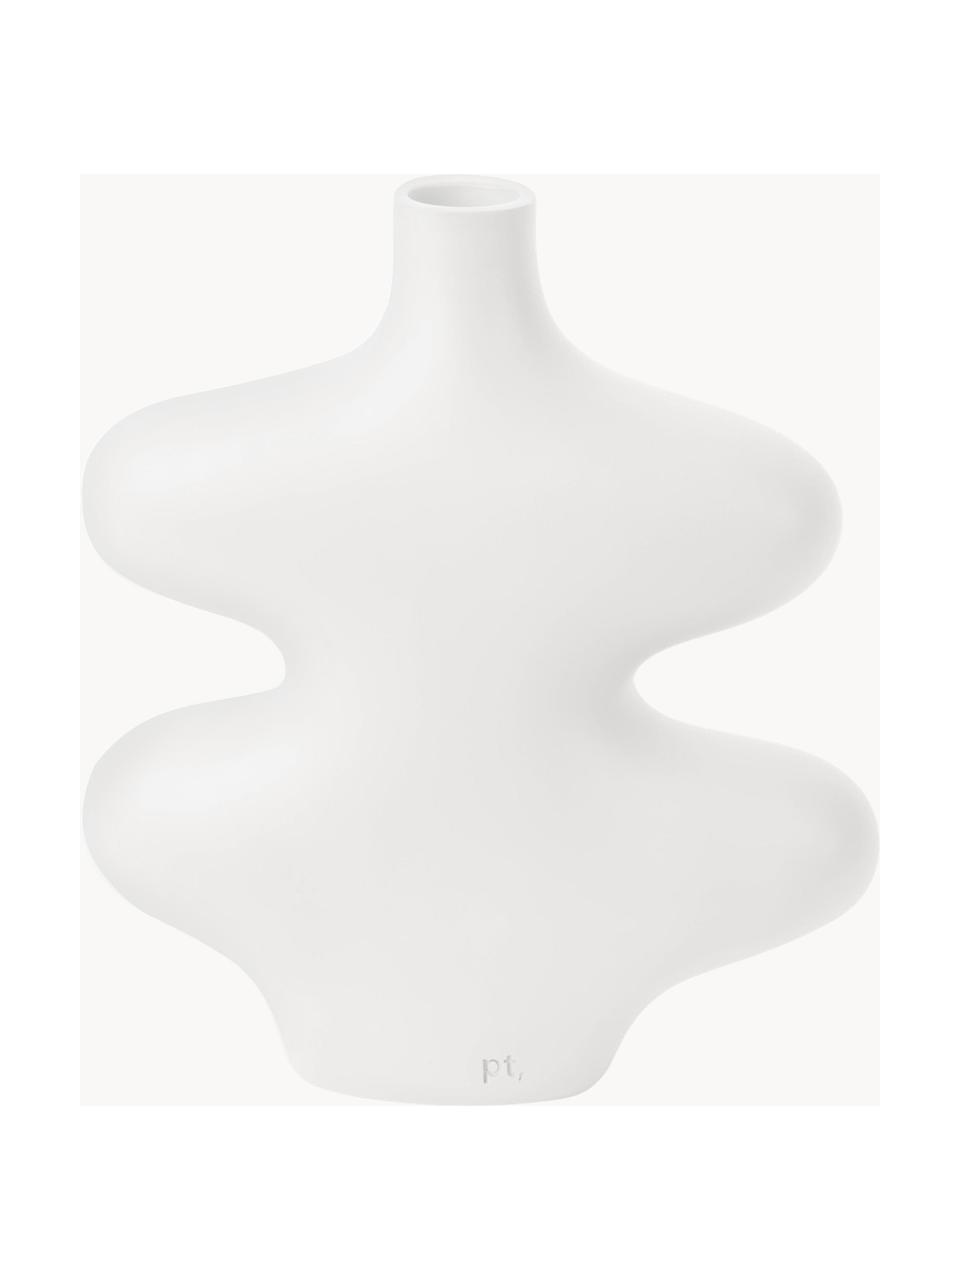 Wazon Organic Curves, Poliresing, Biały, S 18 x W 21 cm